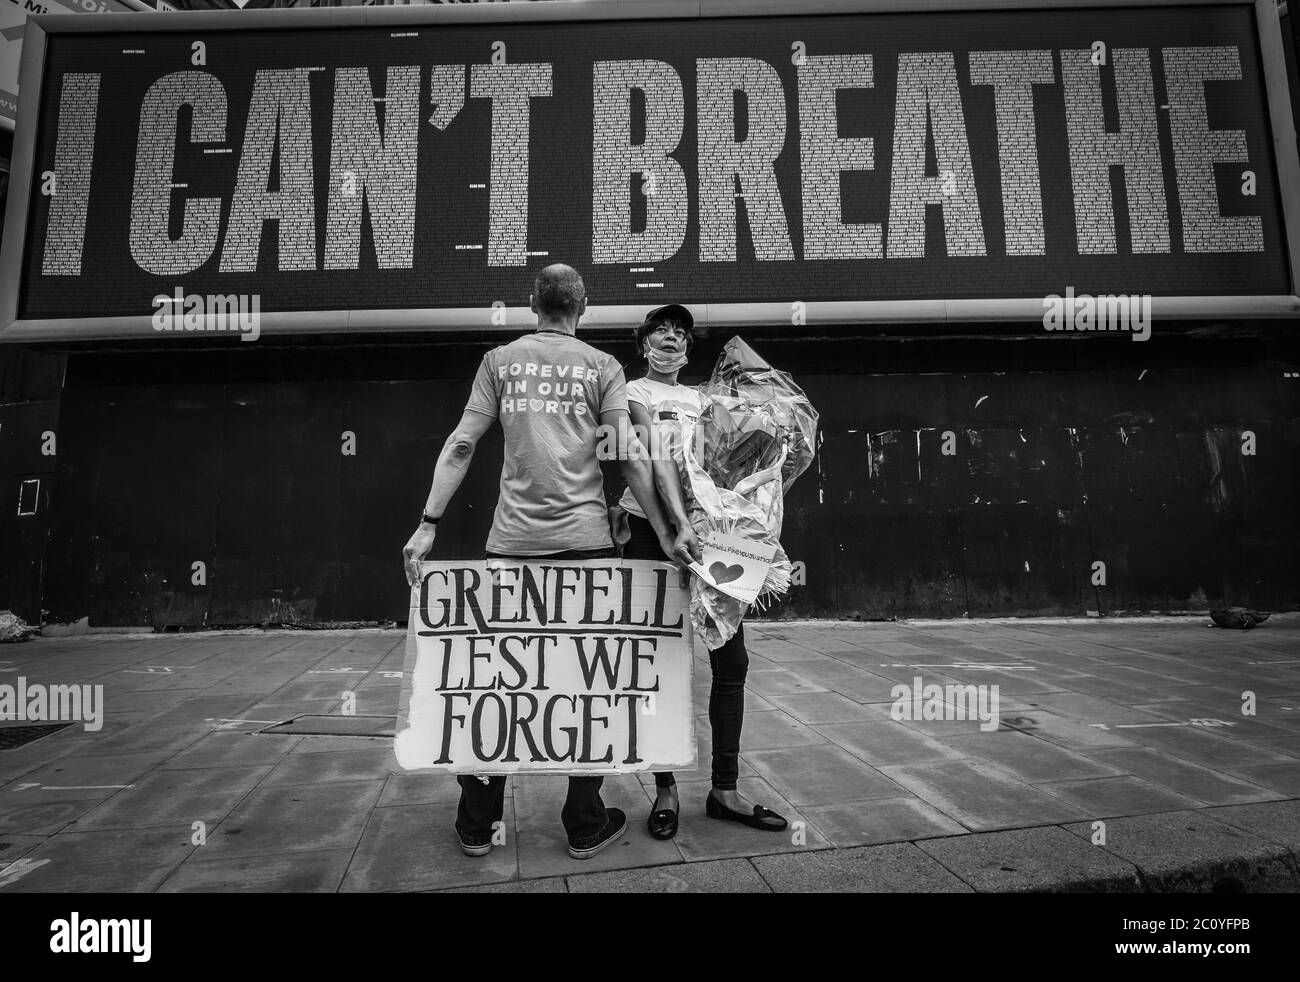 Grenfell, damit wir nicht vergessen. Demonstranten demonstrieren in London vor einem Plakat "Ich kann nicht atmen". Stockfoto